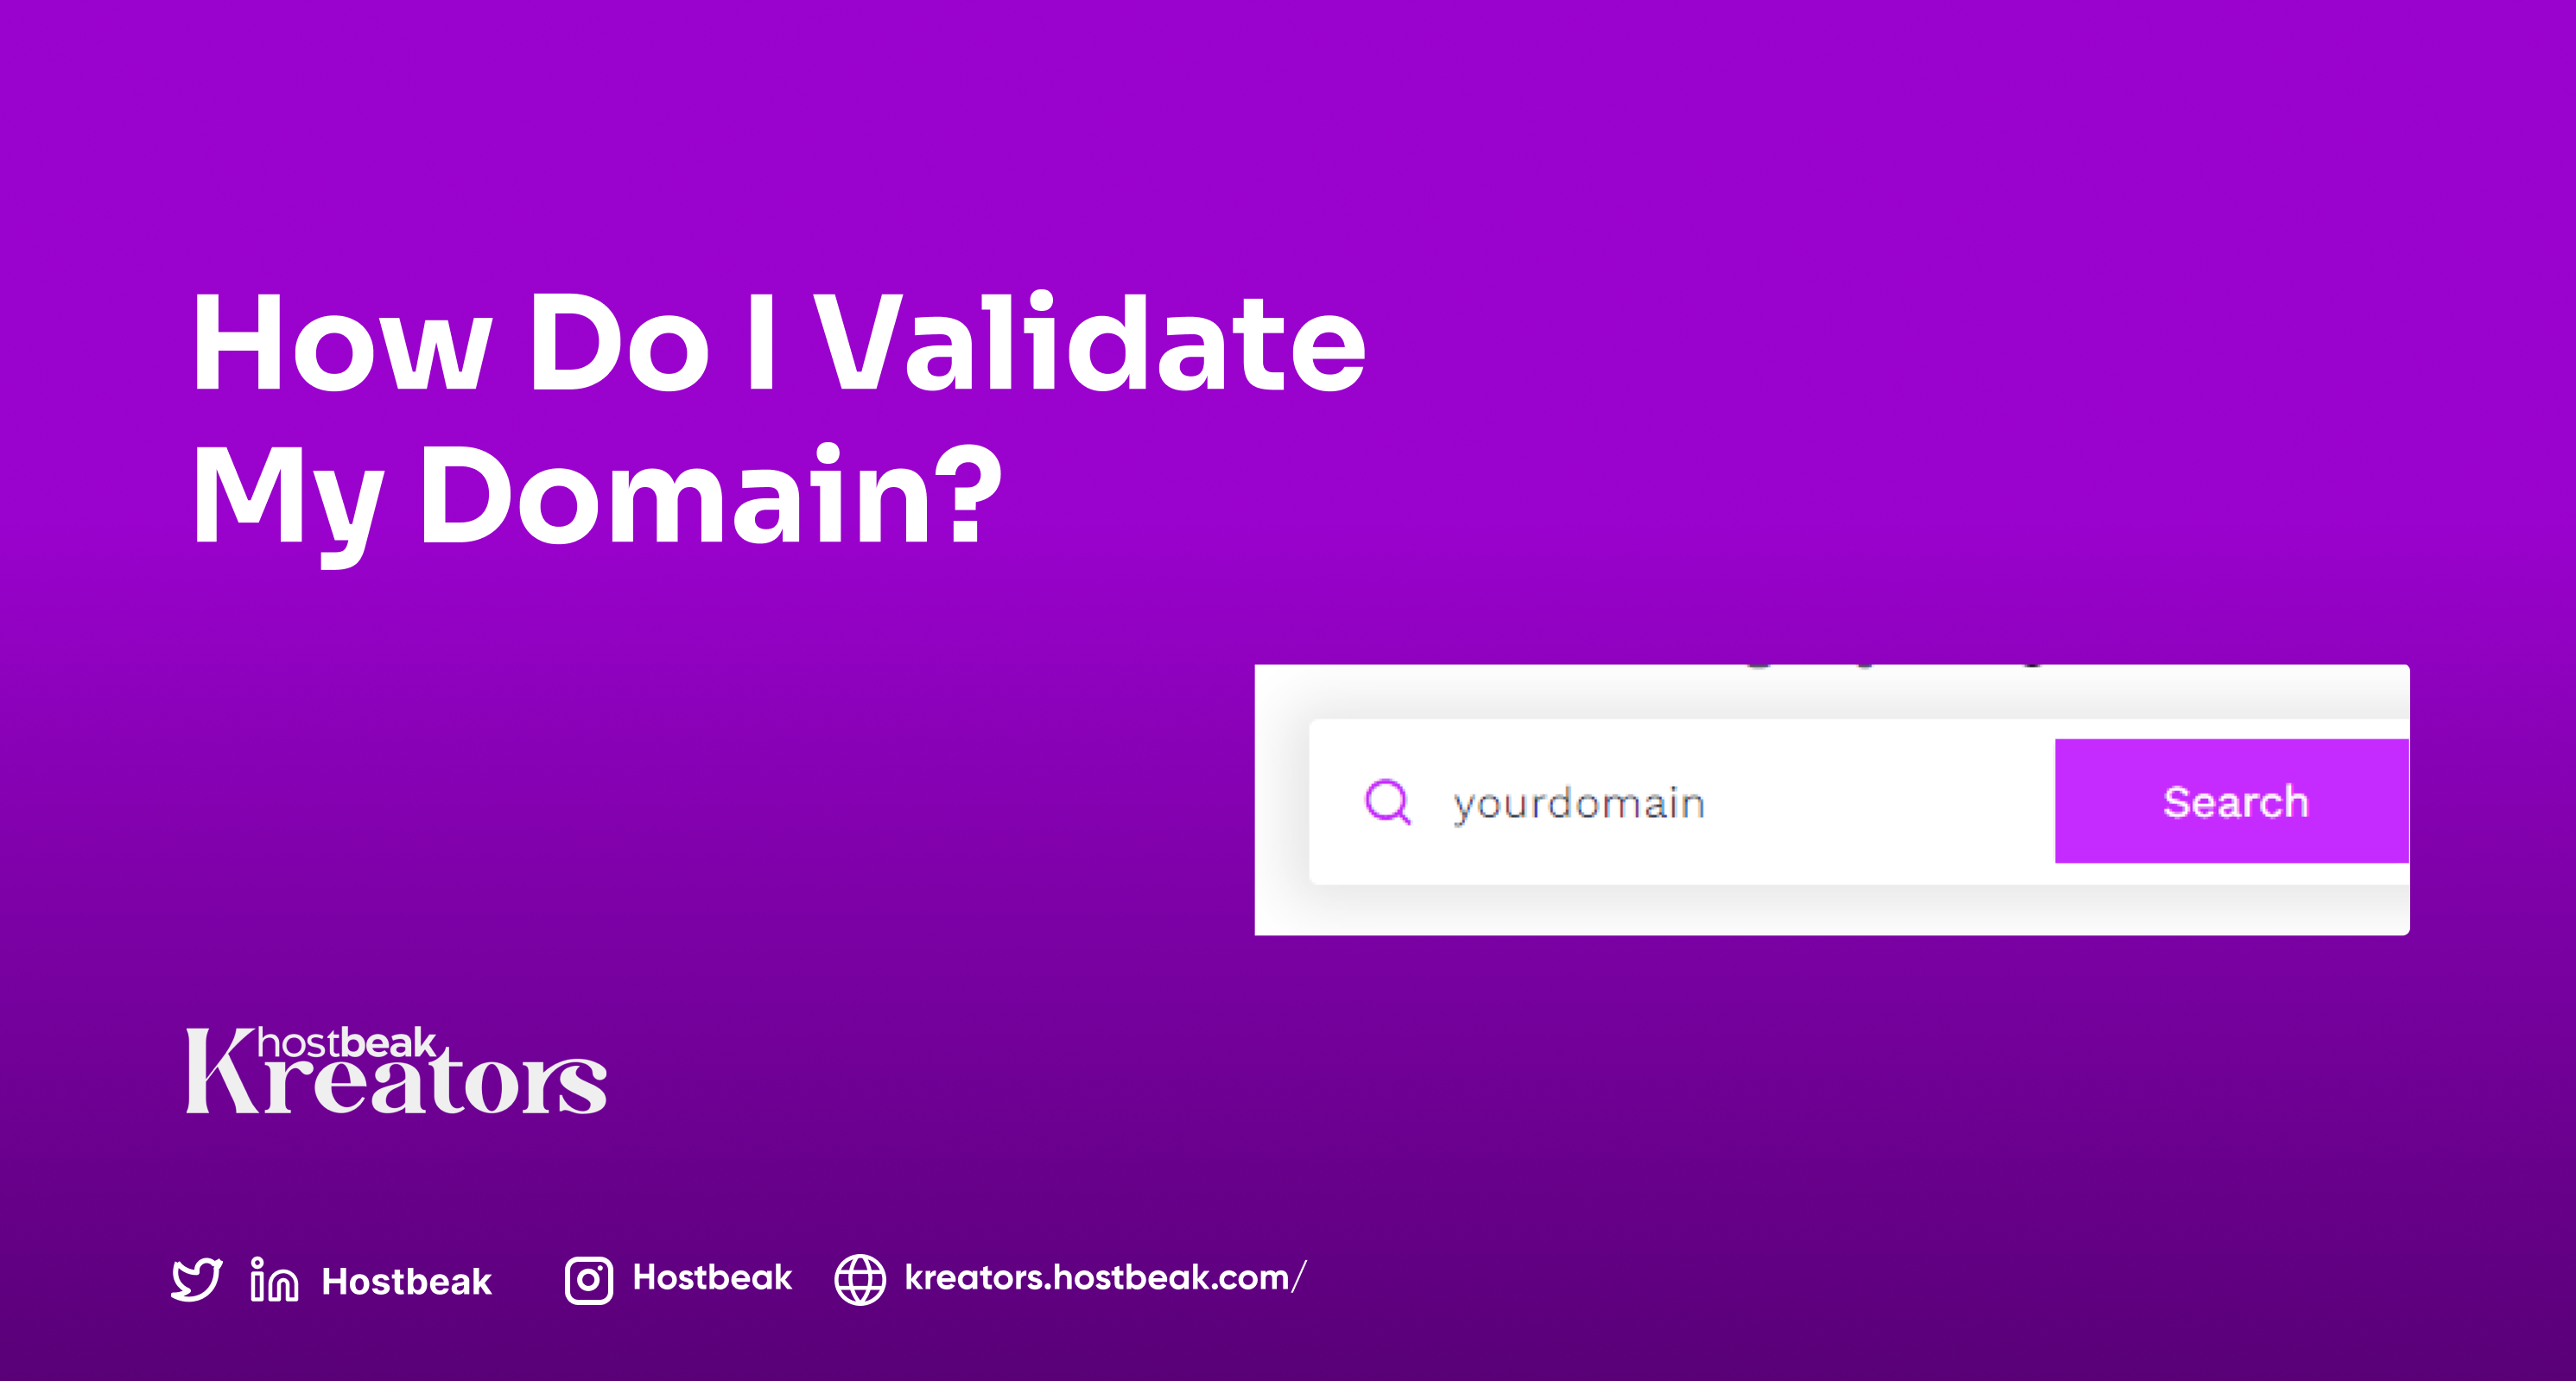 How do I validate my domain?